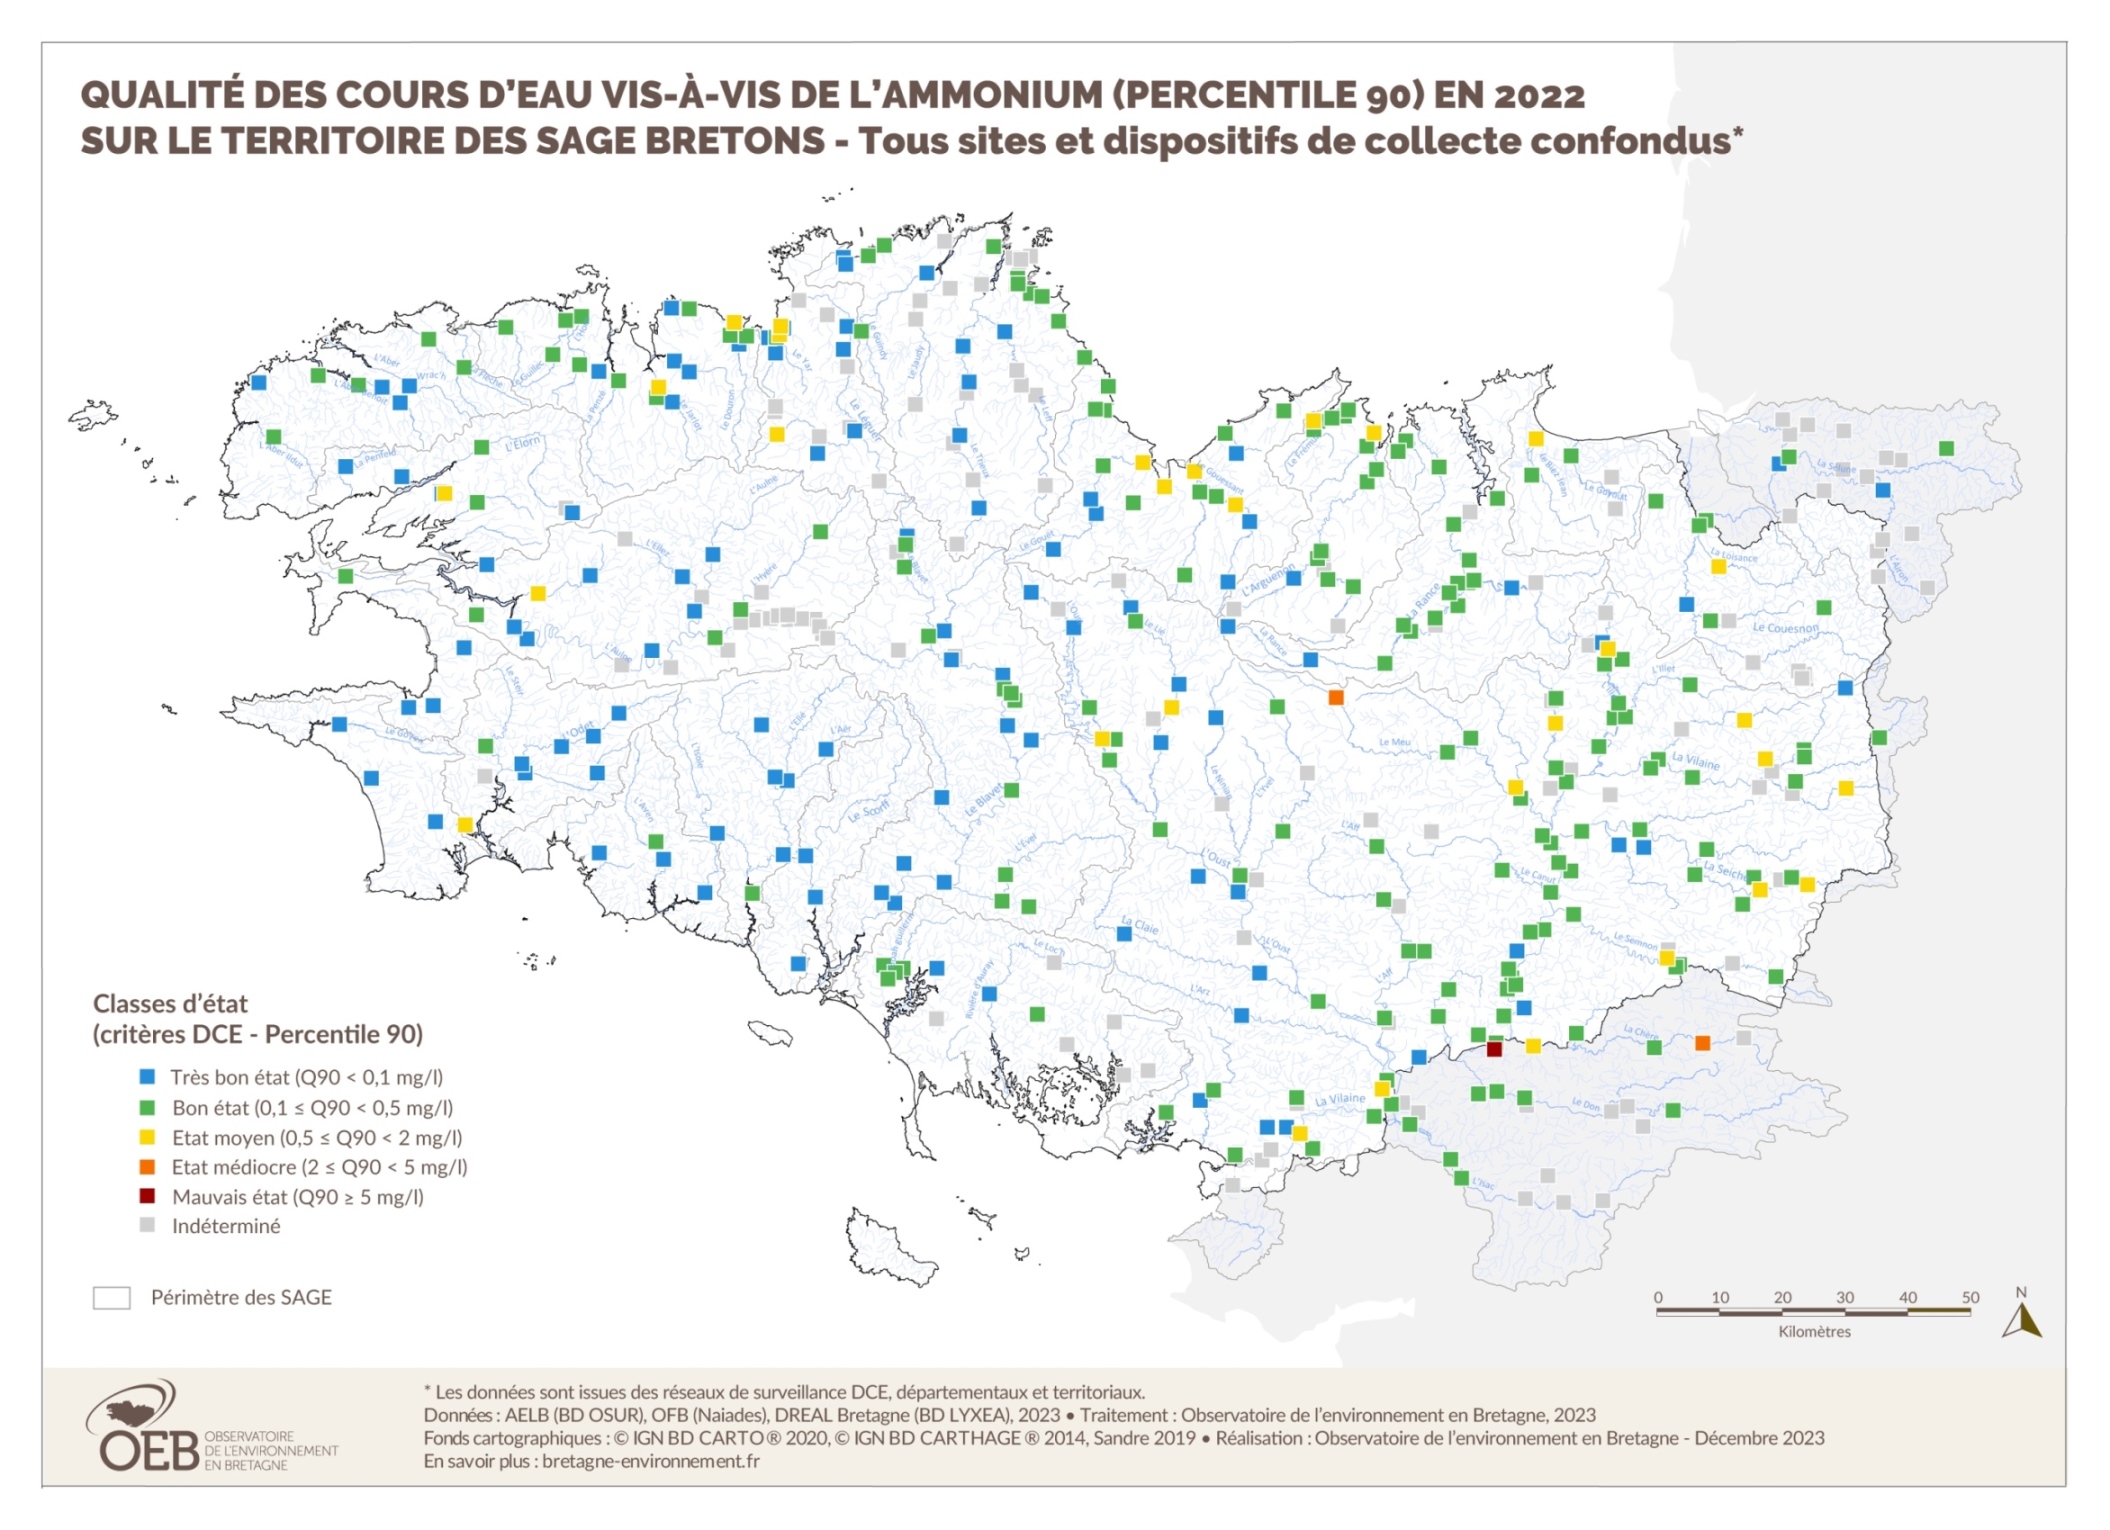 Qualité des cours d'eau bretons vis-à-vis de l'ammonium (Q90) en 2022